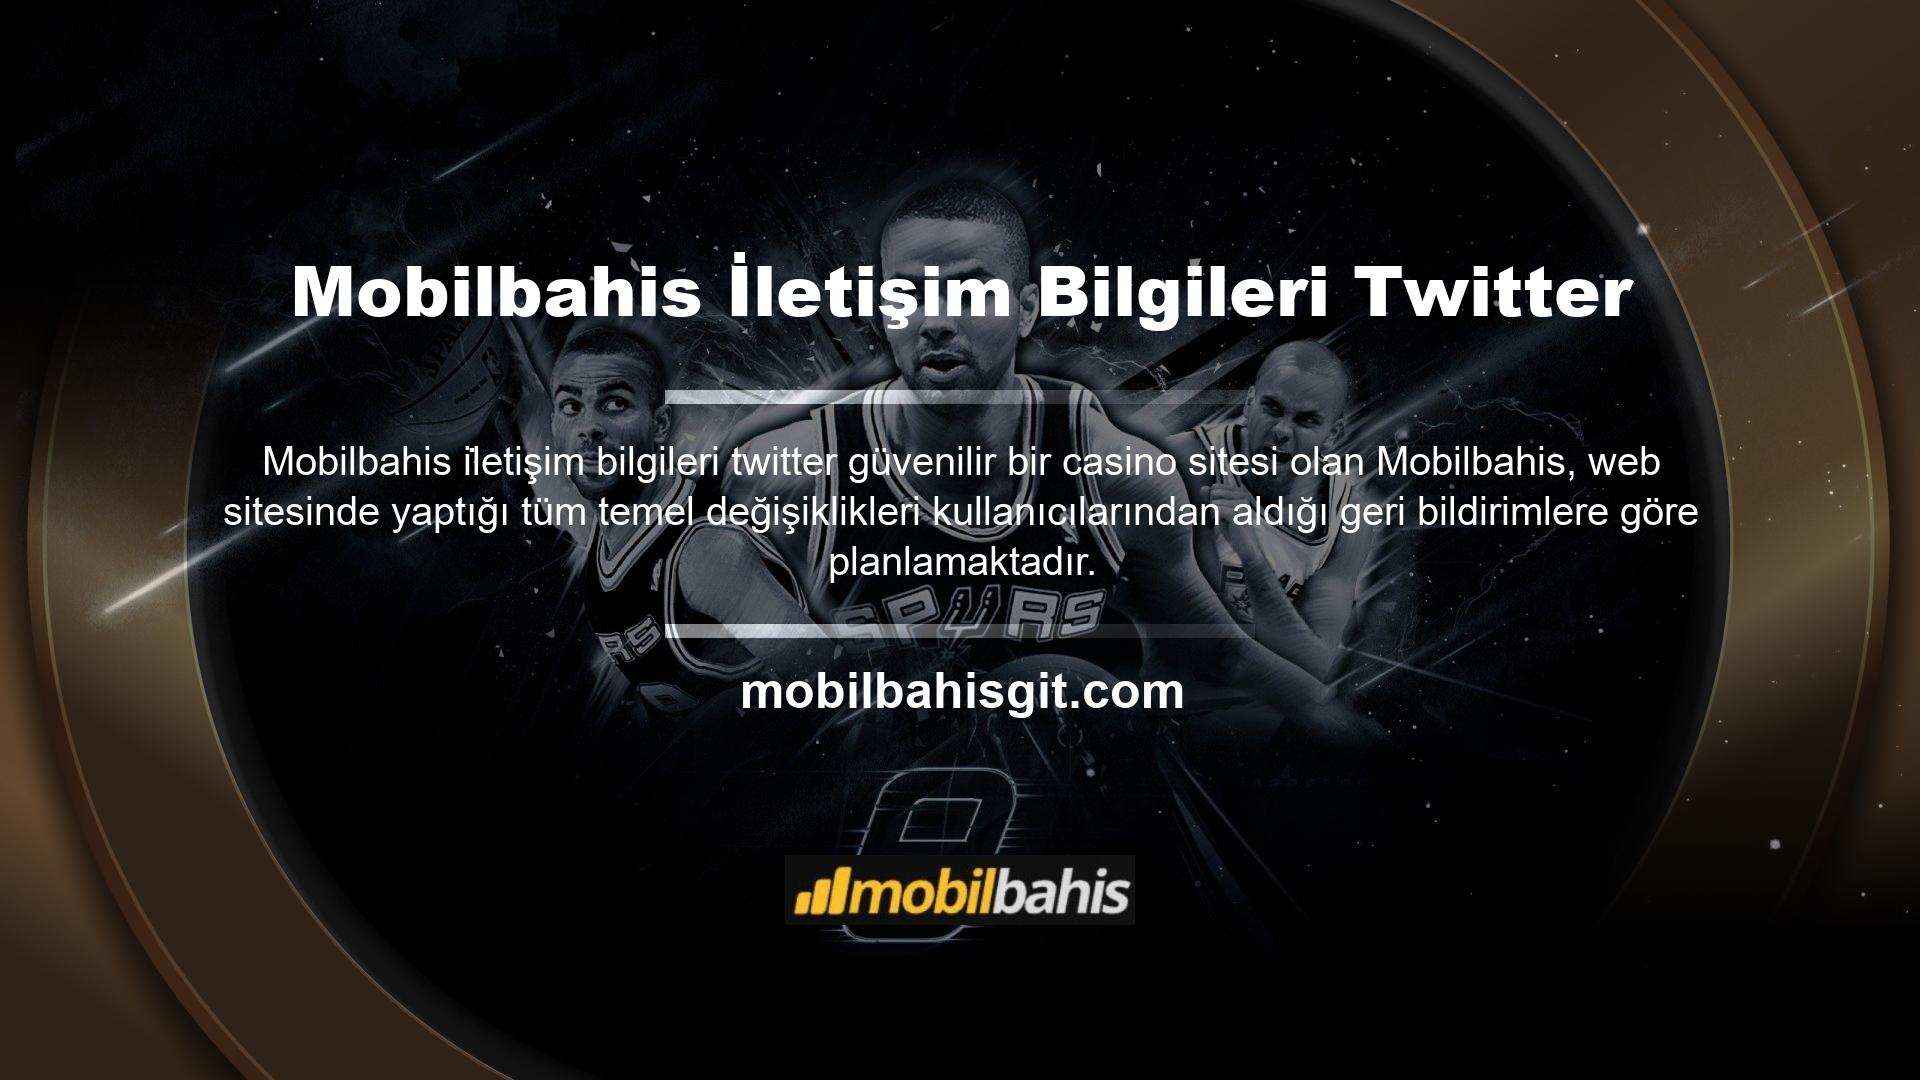 Bu sayede hem bahis ve casino sitesi Mobilbahis, hem de canlı bahisin önemli adreslerinden biri olan Mobilbahis TV'nin kullanıcılardan tam puan alması sağlanmaktadır